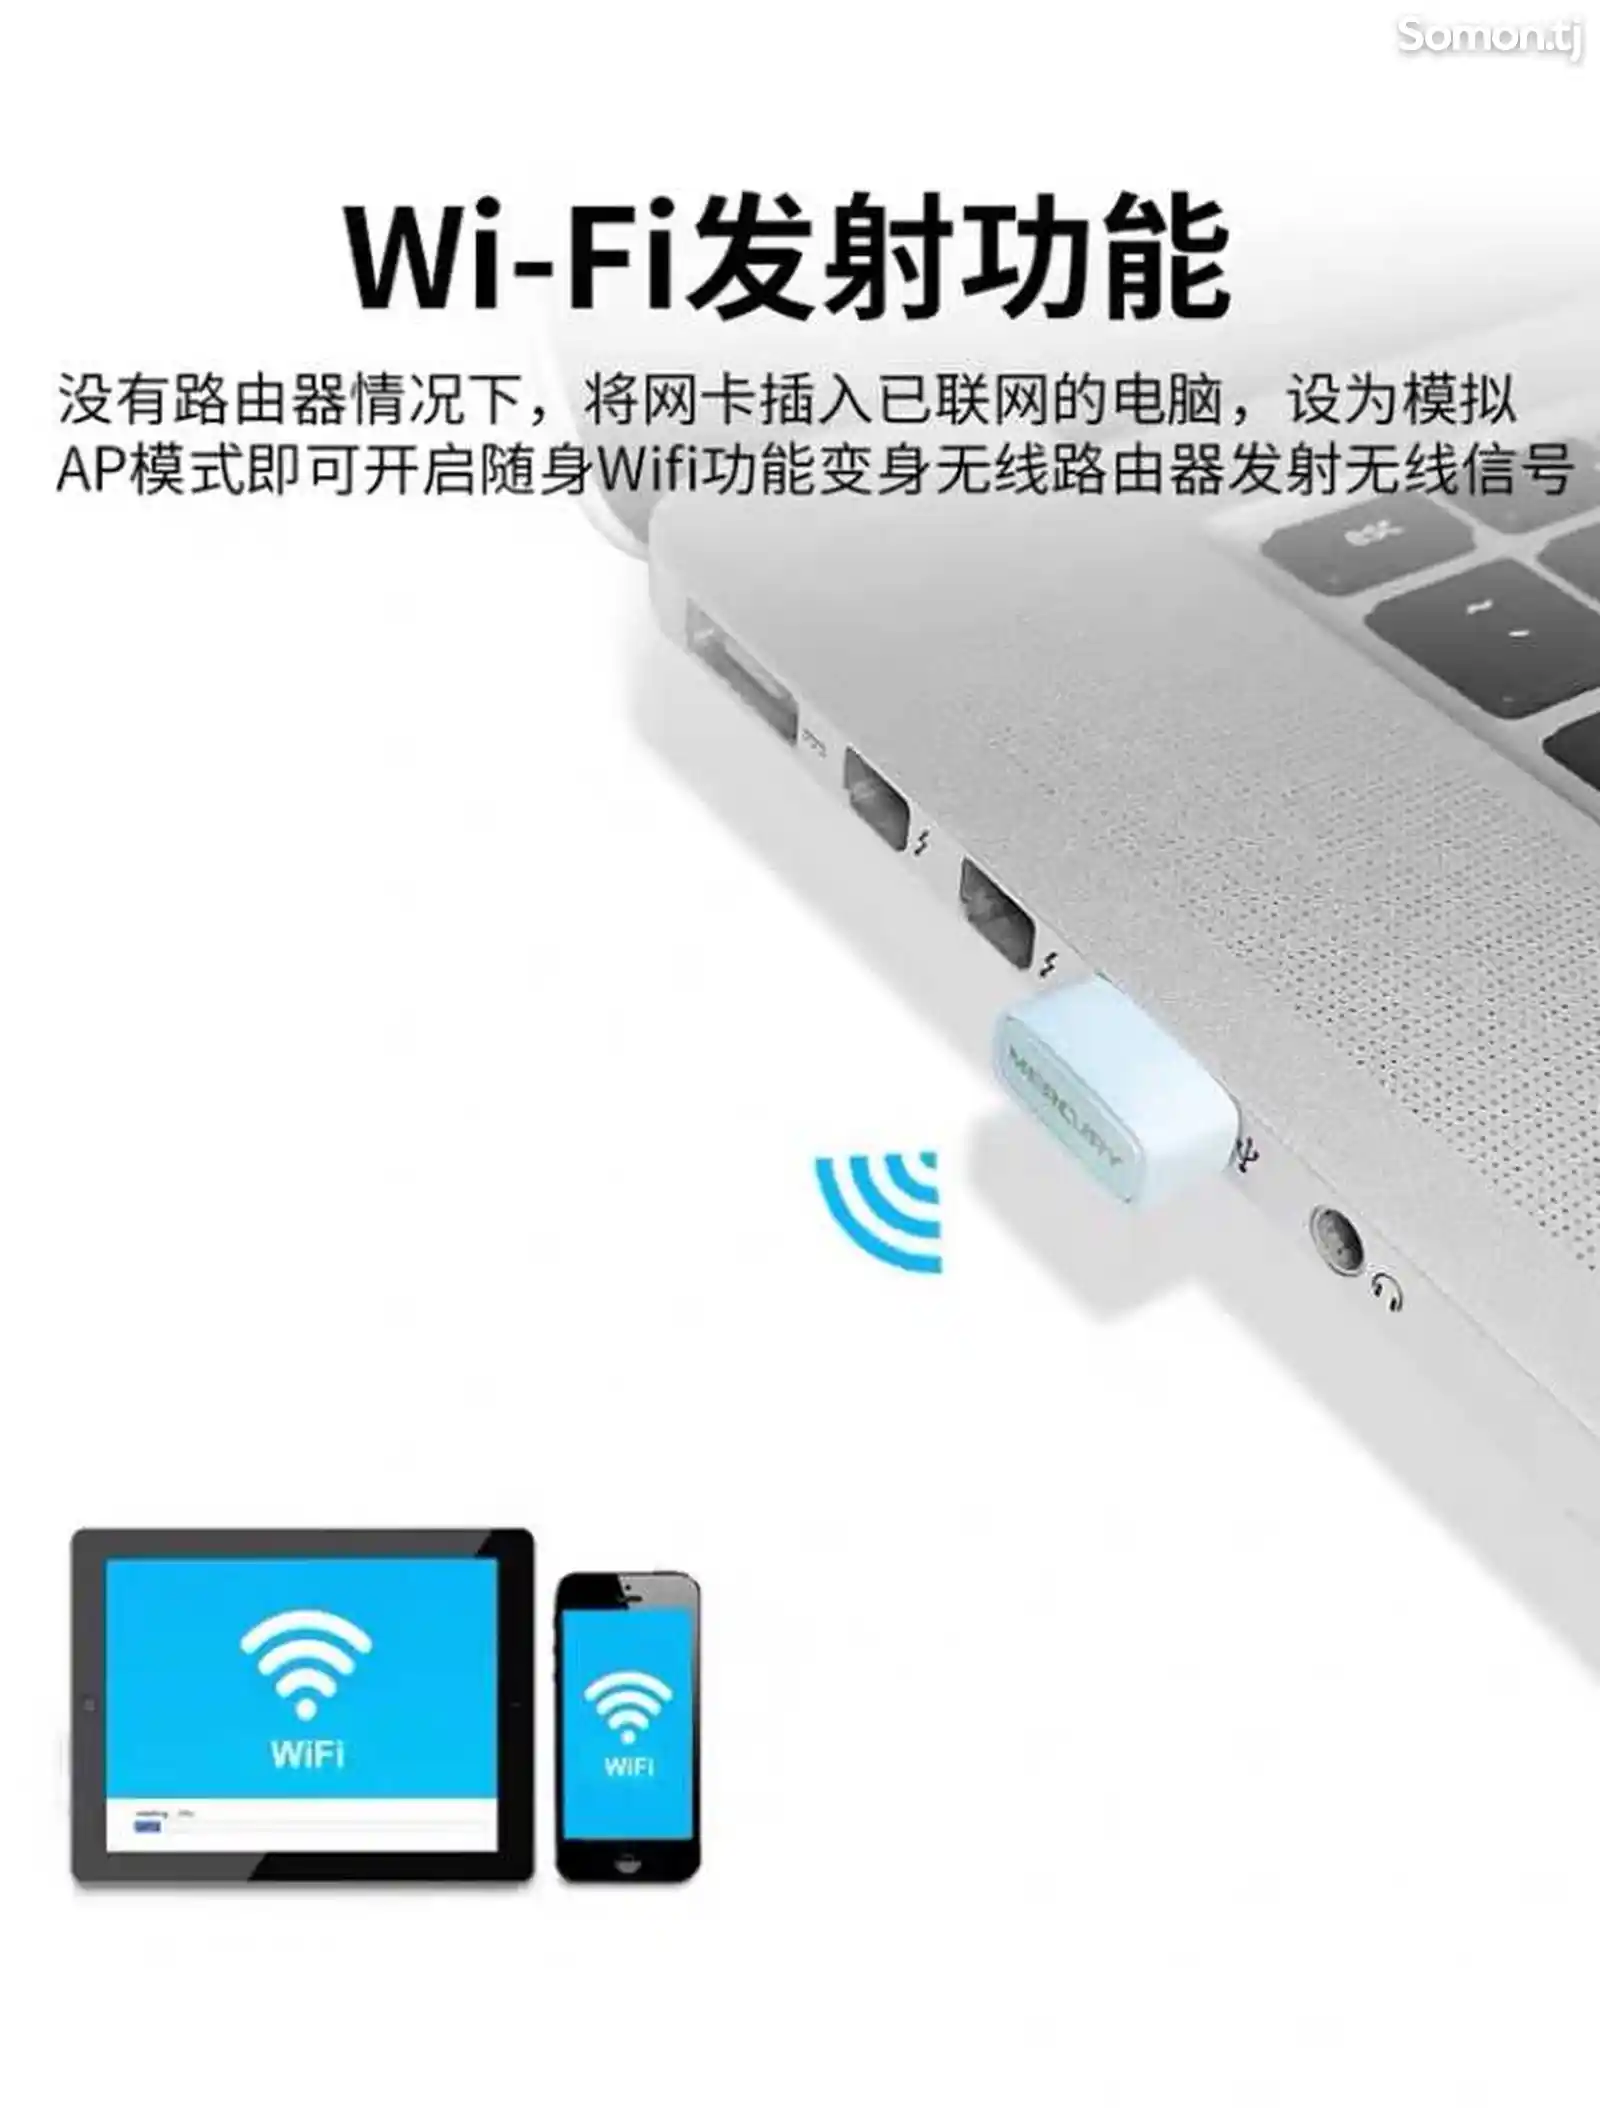 WiFi-адаптер Mercury MW150US на заказ-2